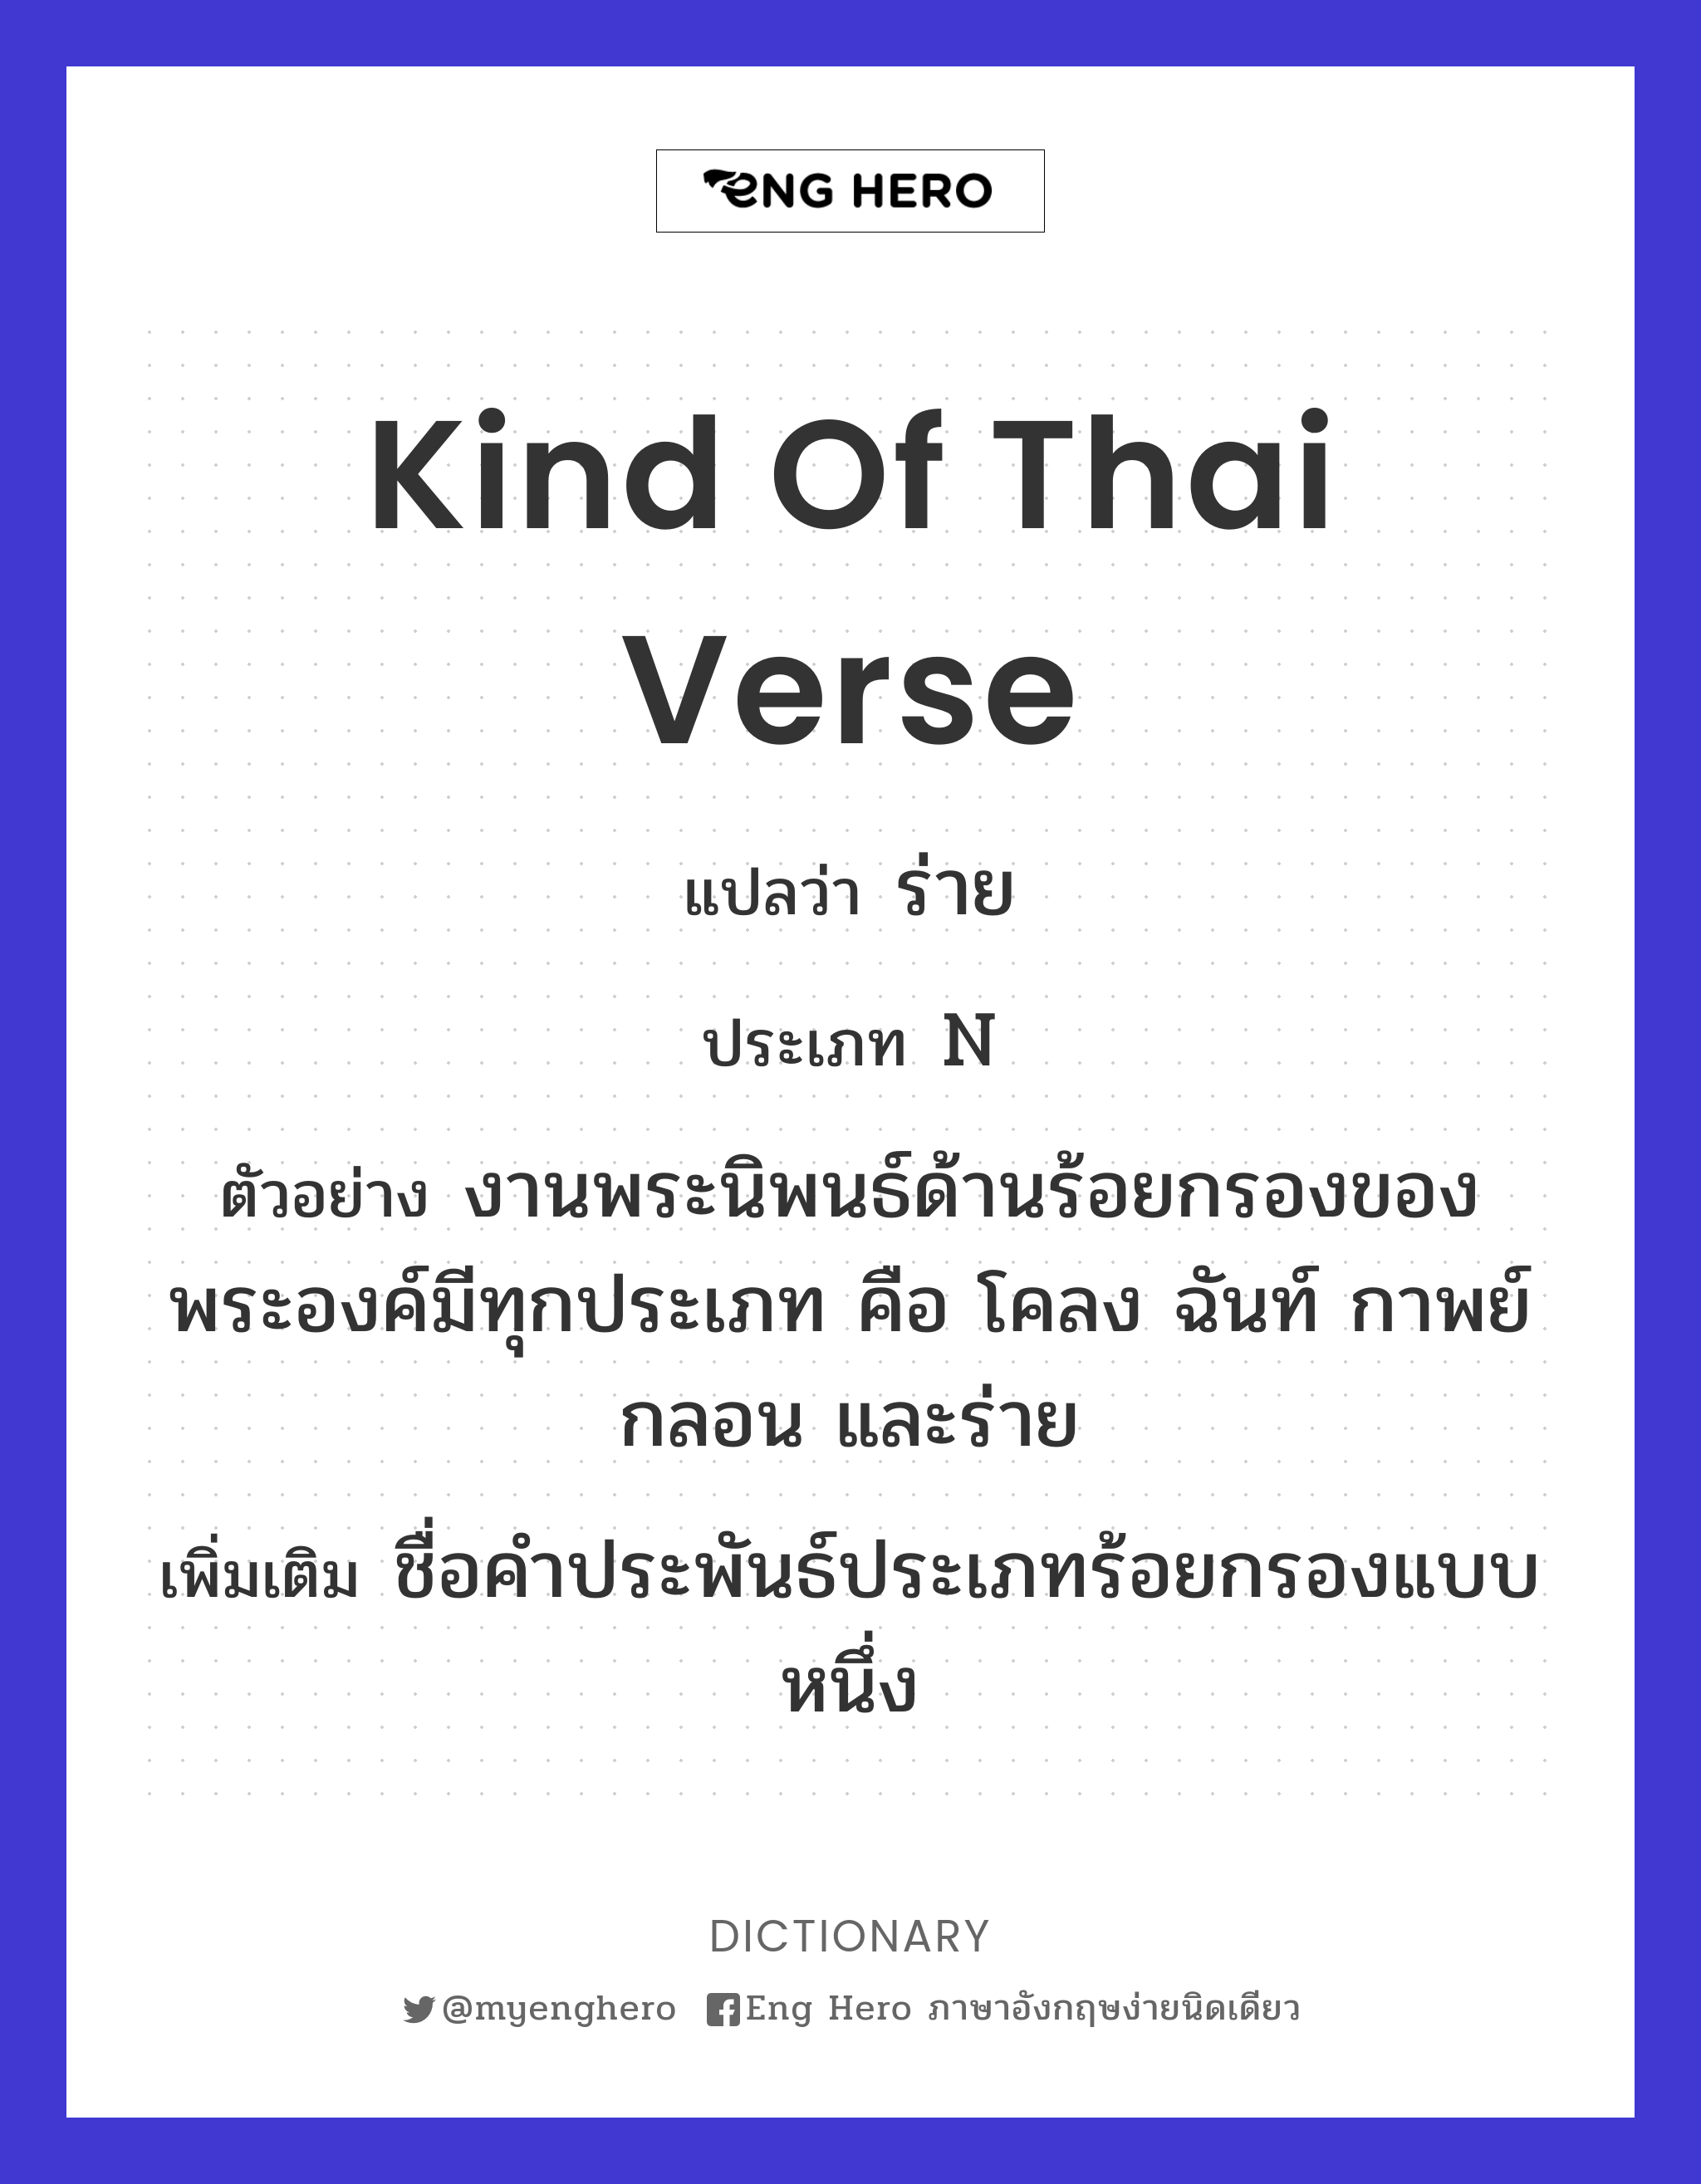 kind of Thai verse